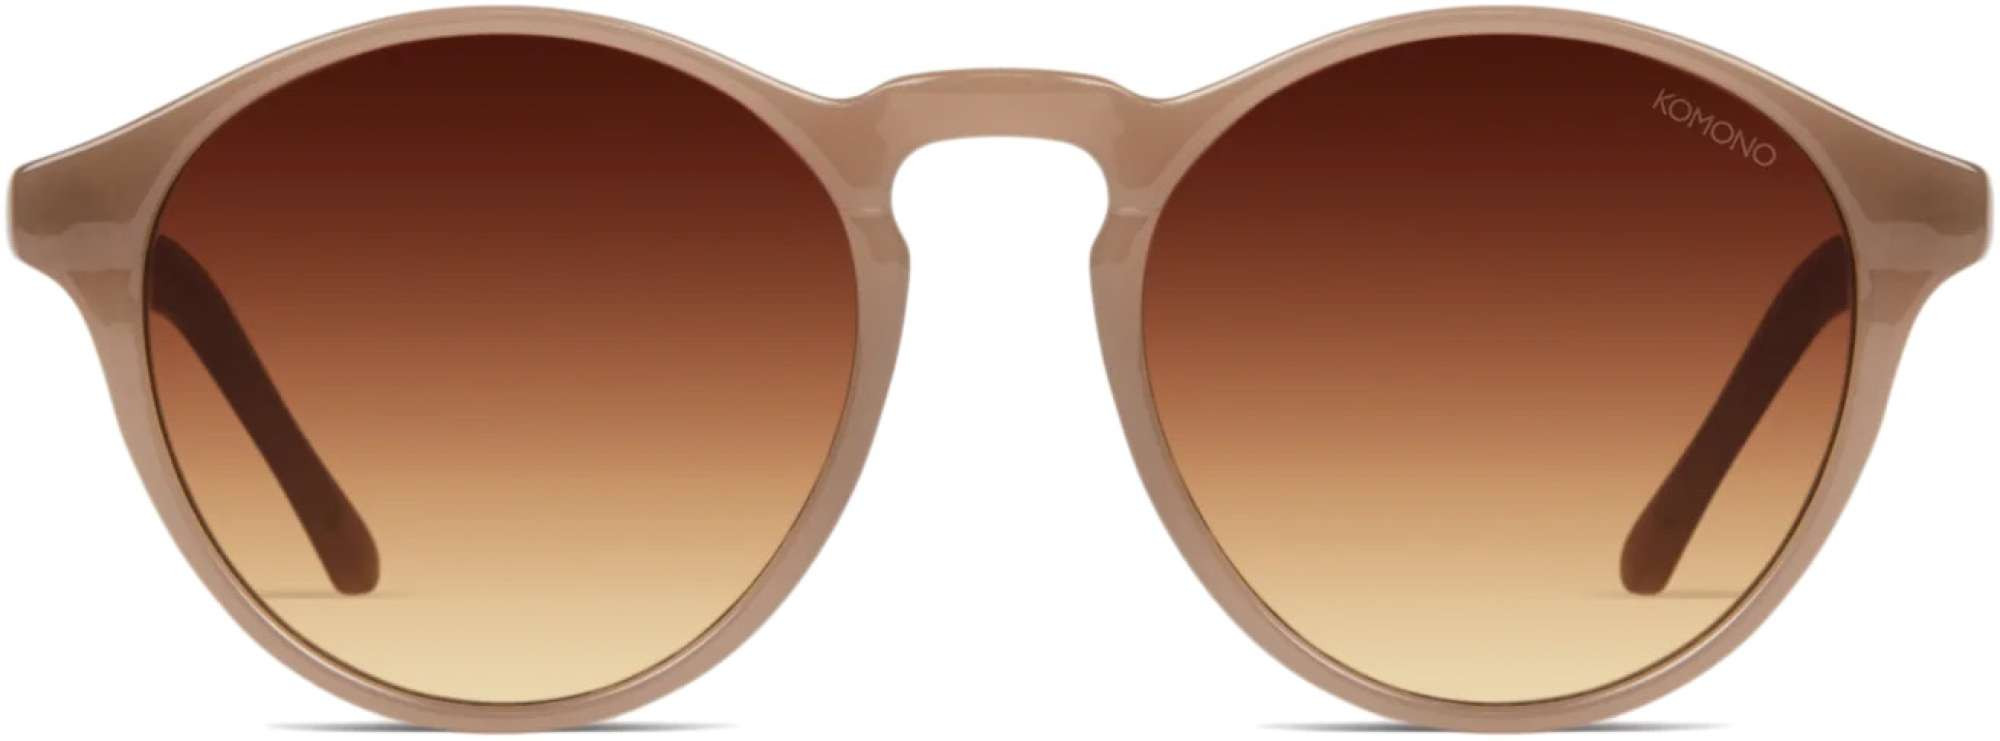 Afbeelding van Komono Devon sahara sunglasses